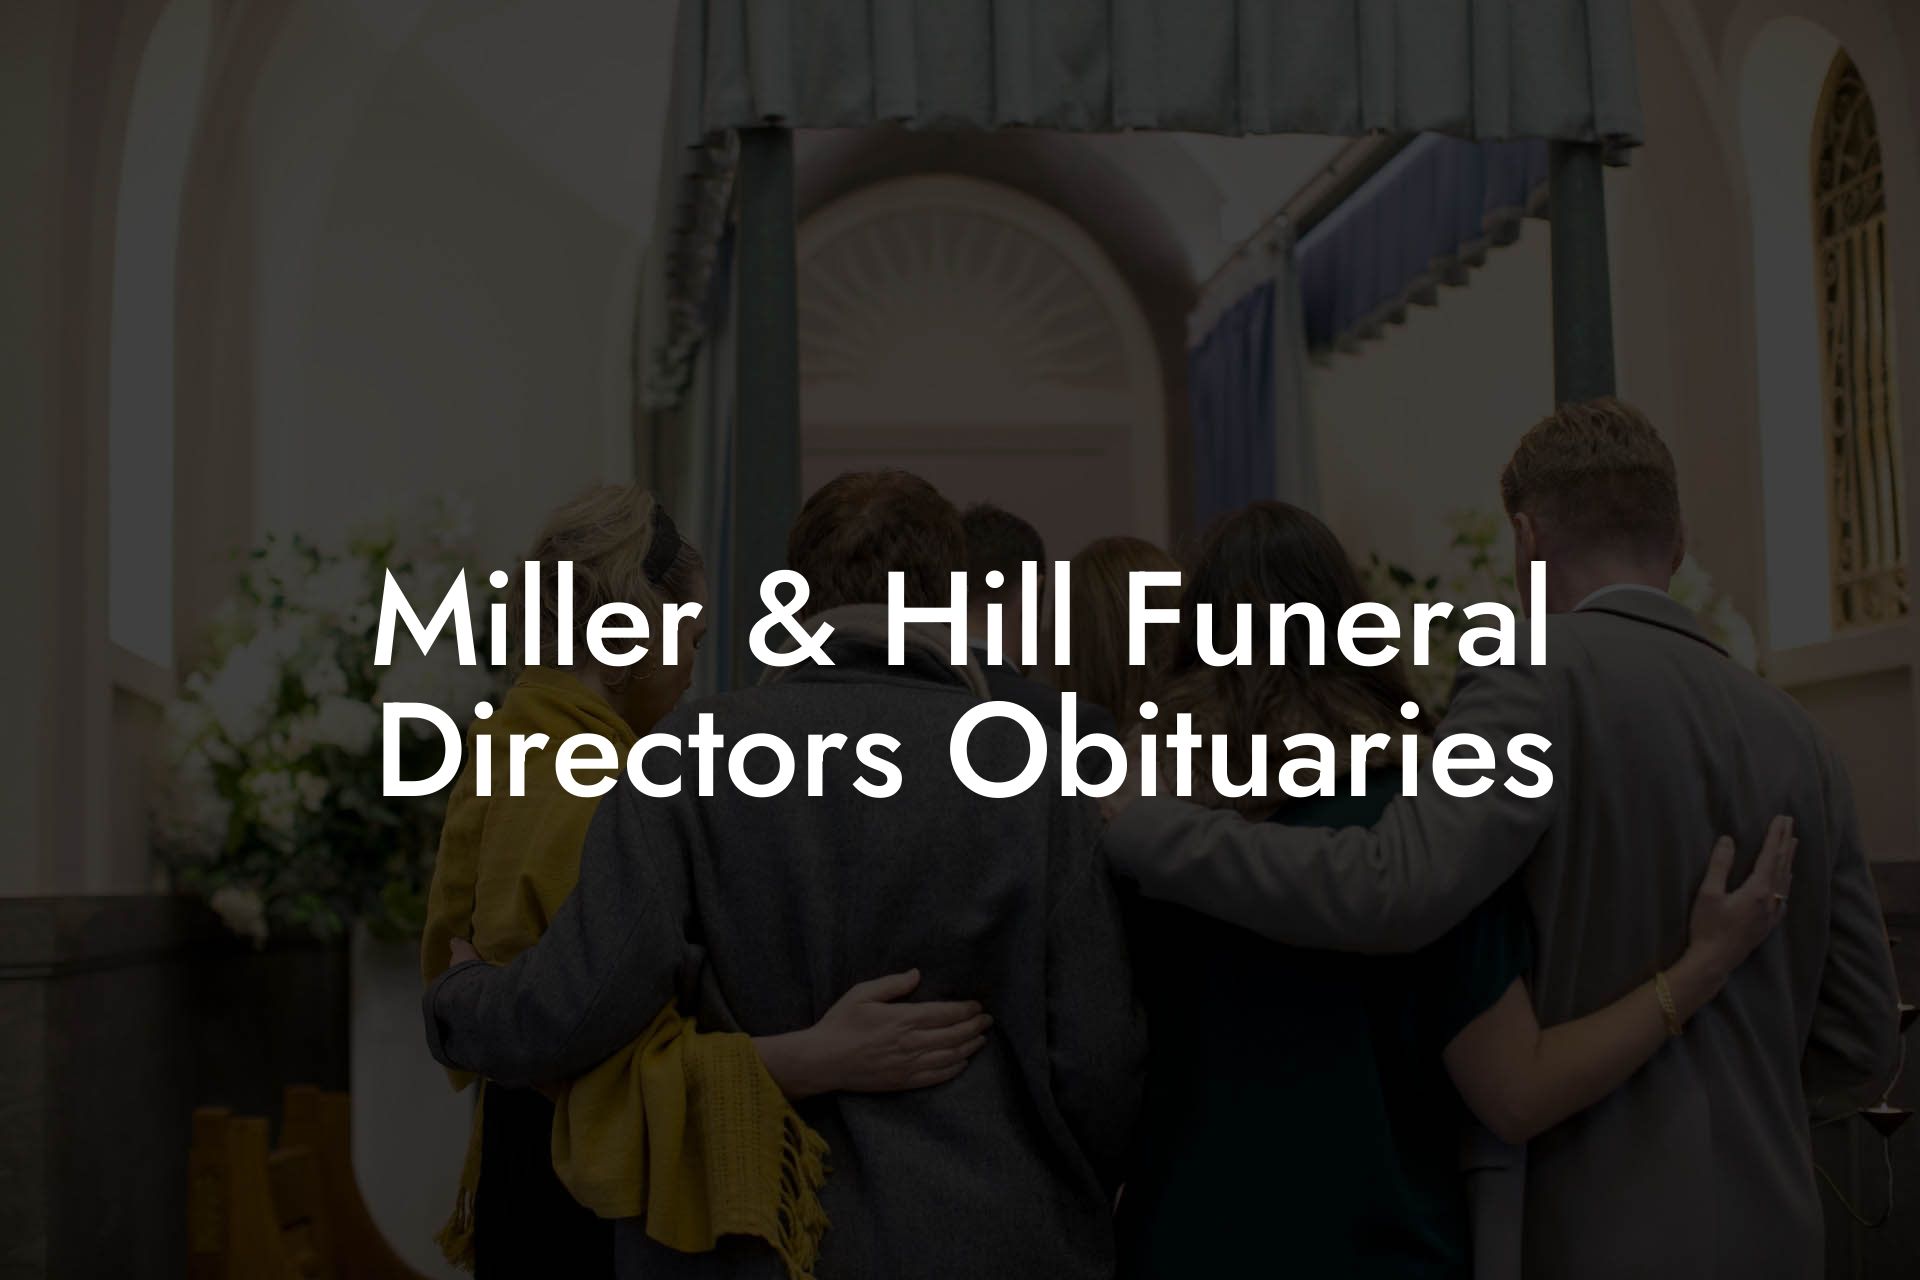 Miller & Hill Funeral Directors Obituaries